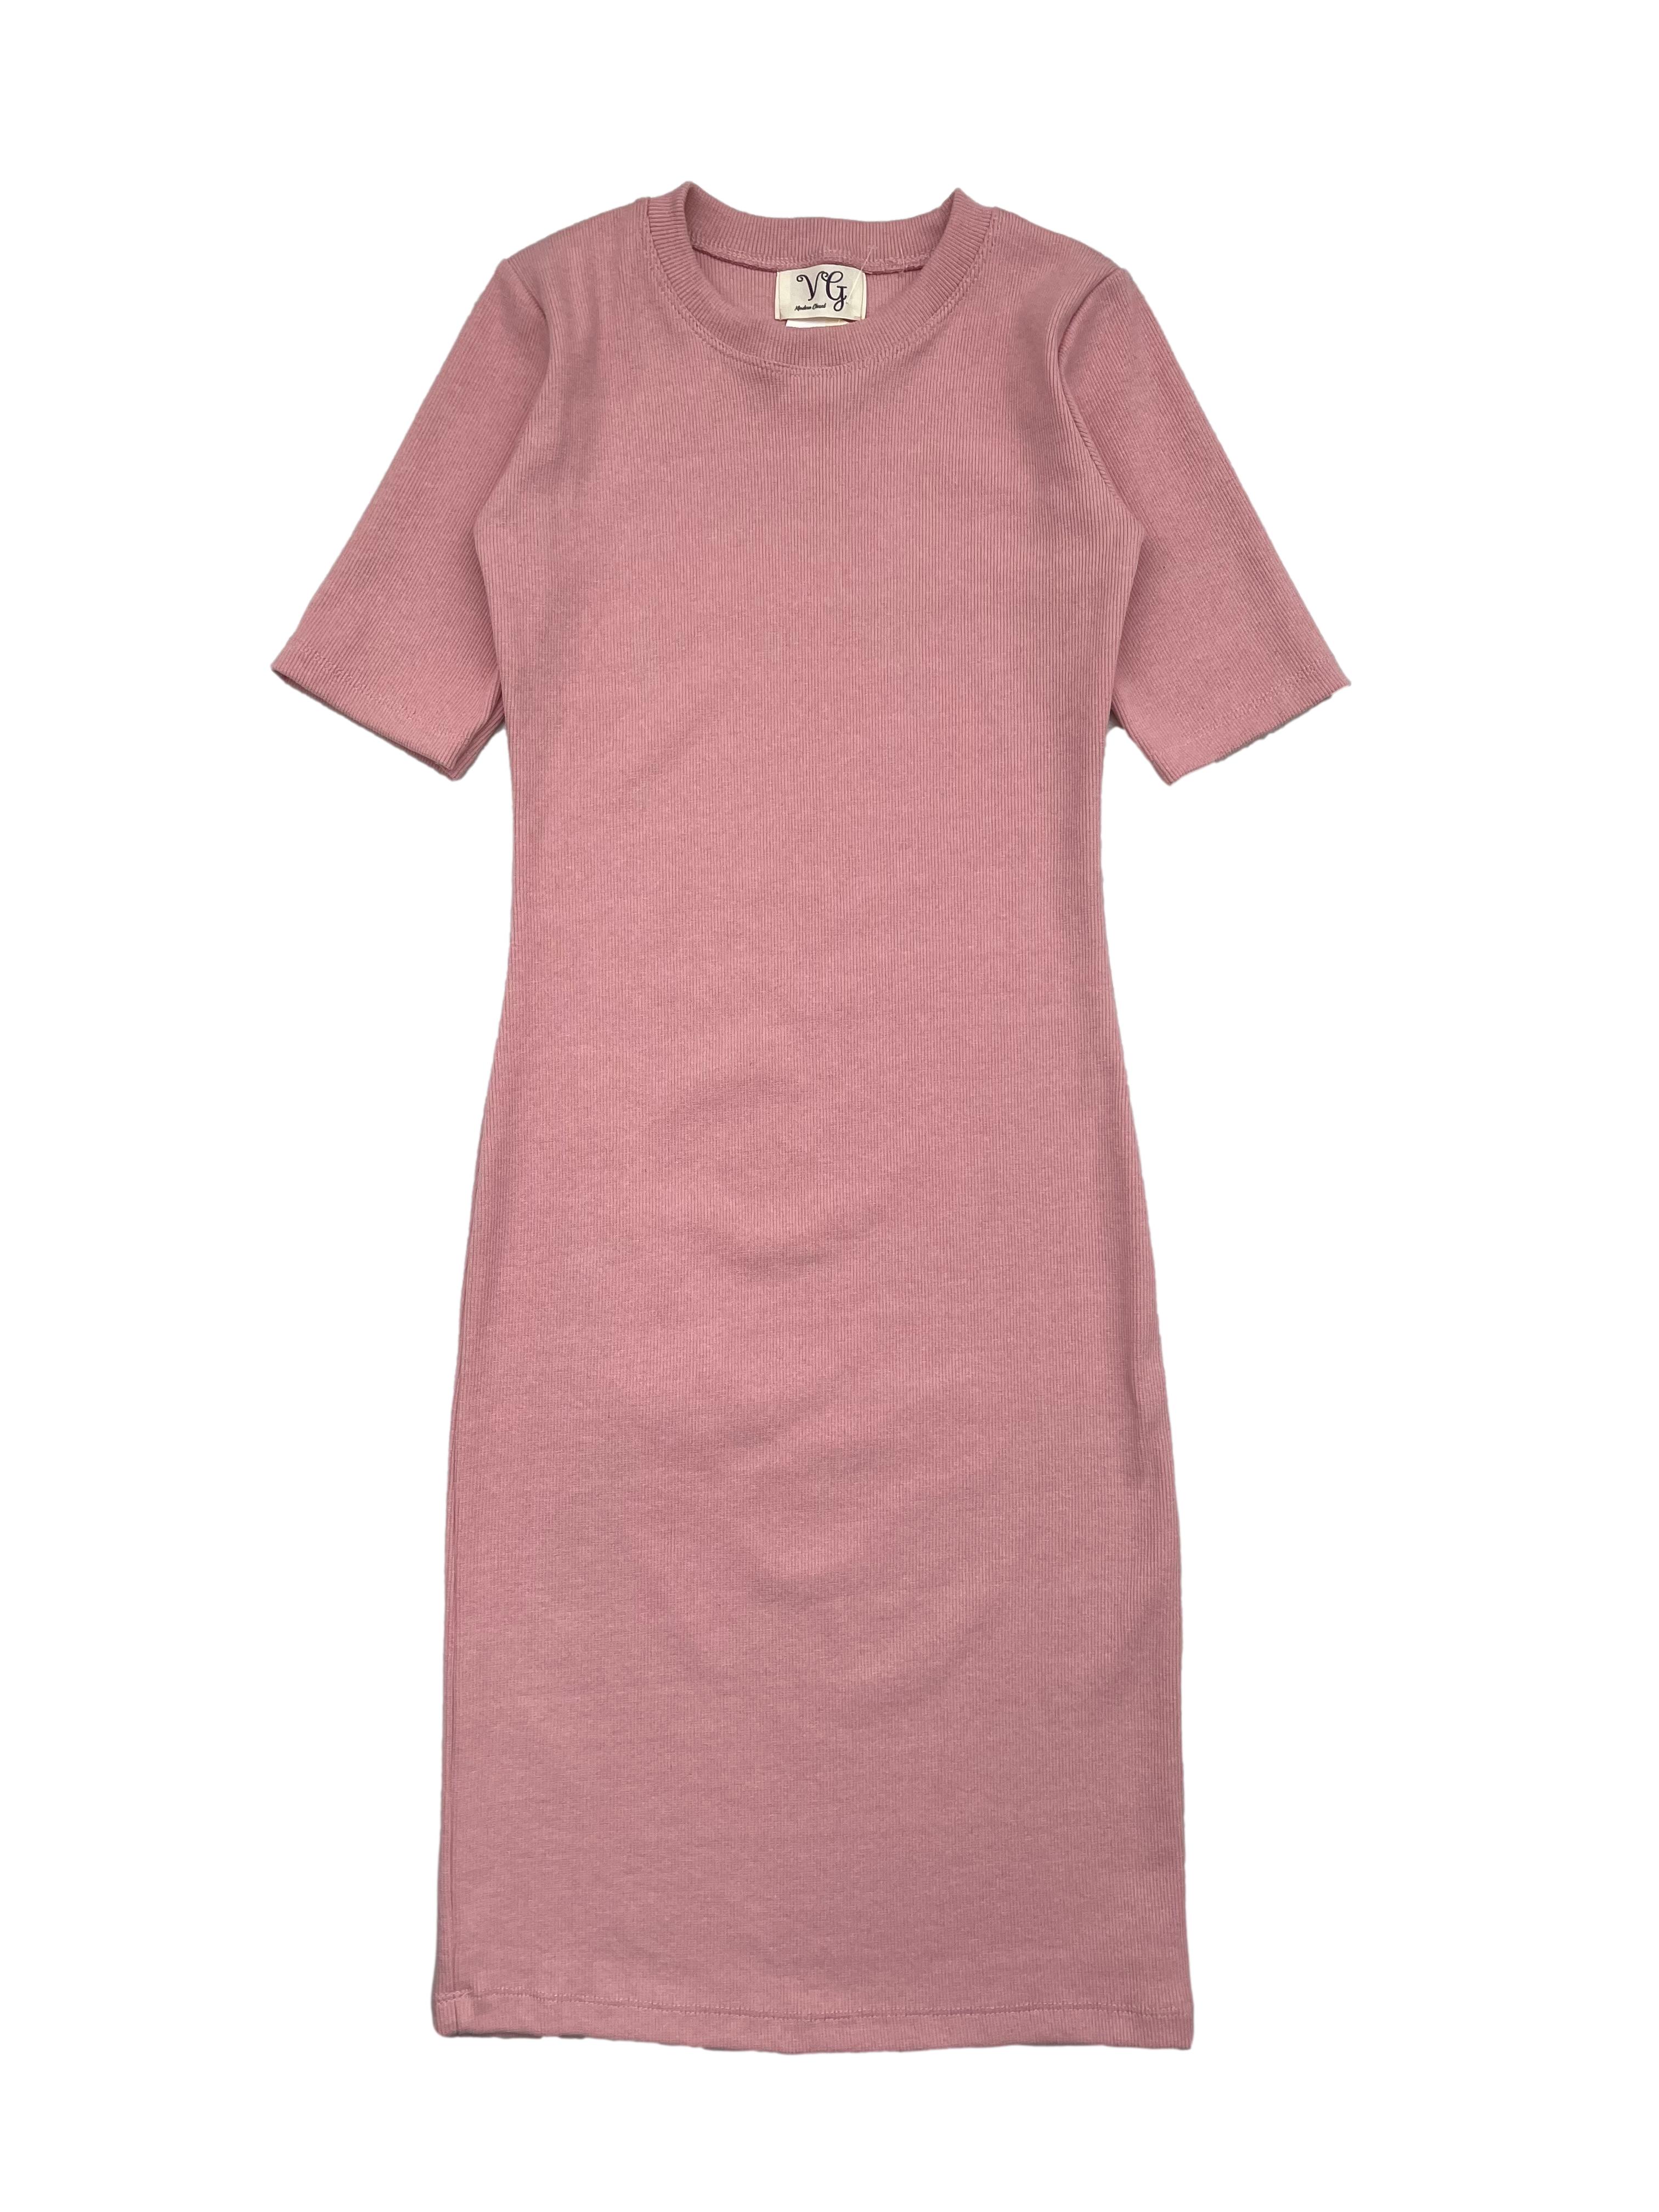 Complacer Agregar Solicitud Vestido de rib palo rosa, manga corta, cuello redondo. Busto:76cm Largo:  90cm | Las Traperas